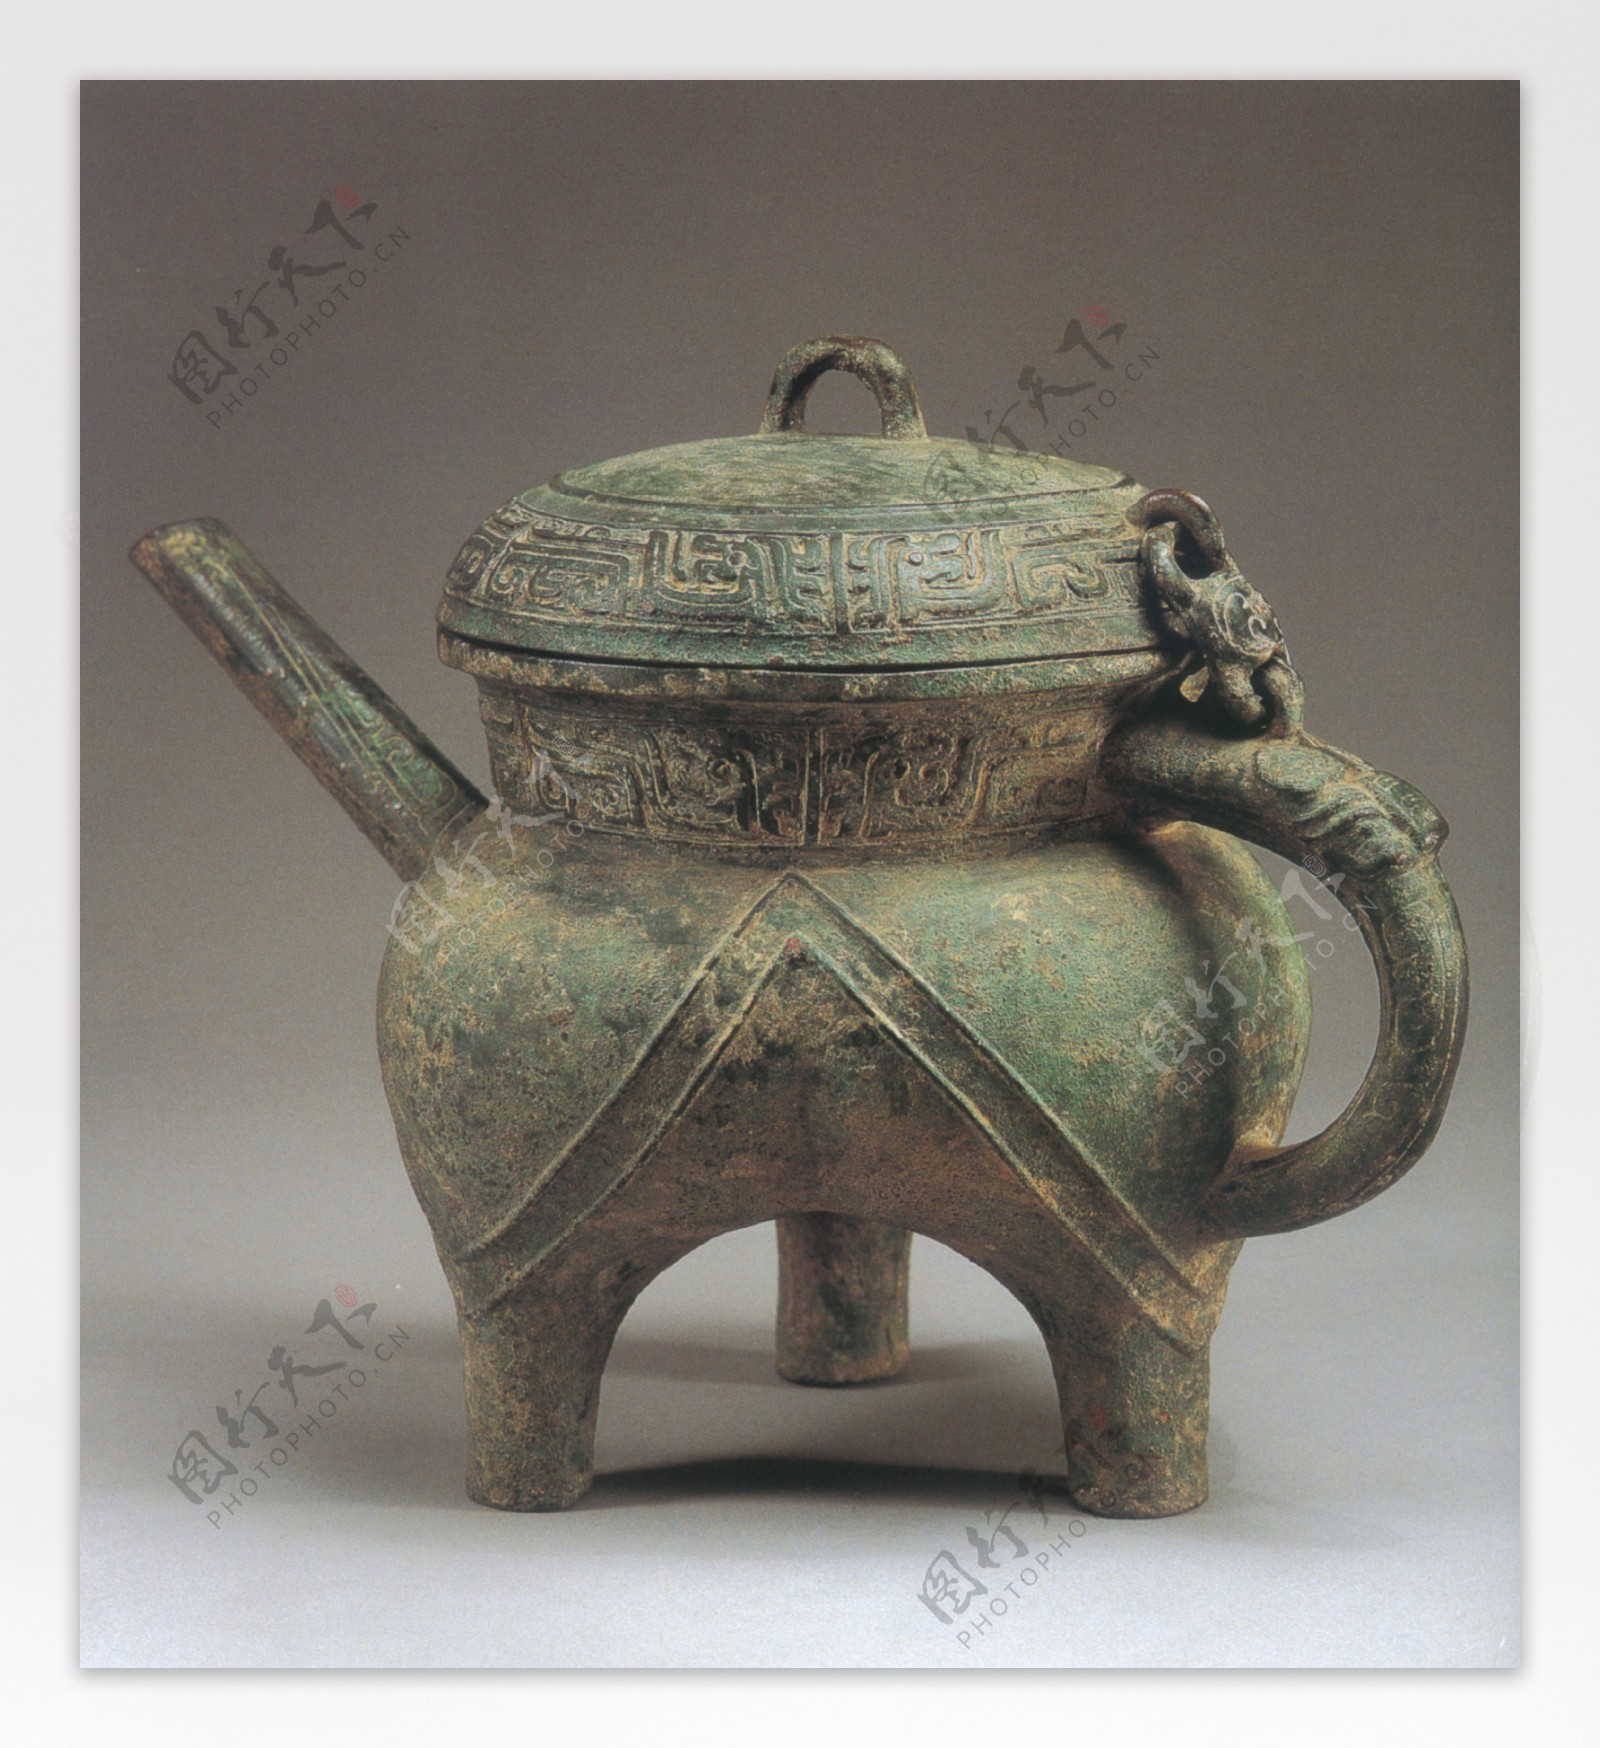 壶盖鼎艺术品出土文物古董铜制品中华艺术绘画